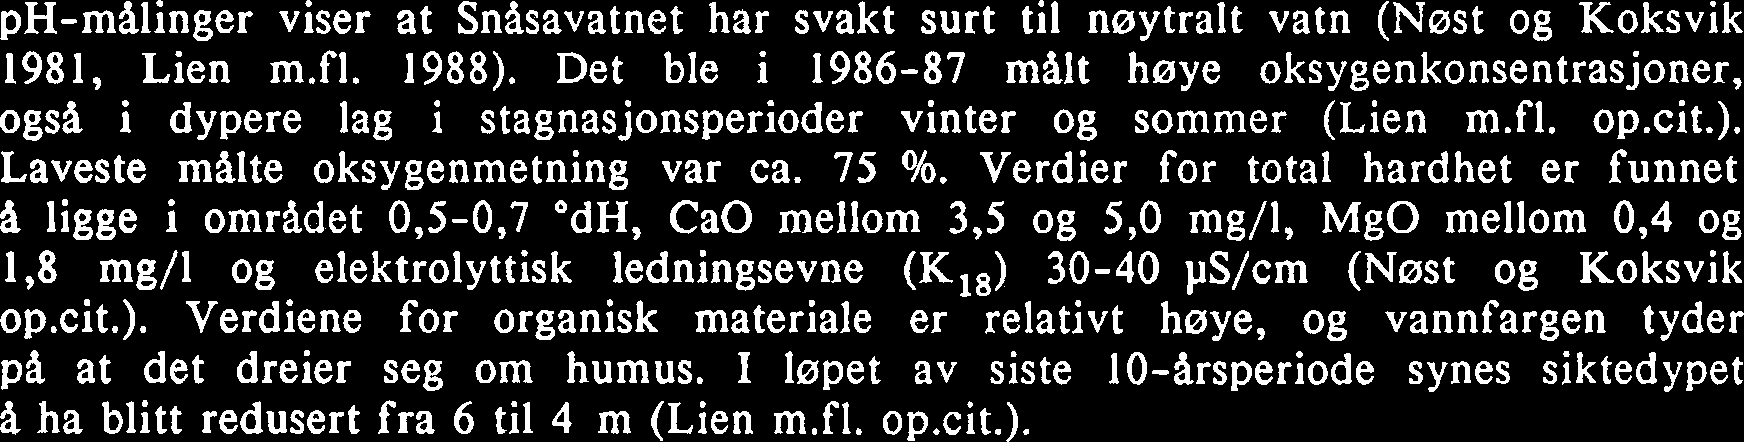 Det ble i 1986-87 malt høye oksygenkonsentrasjoner, ogsa i dypere lag i stagnasjonsperioder vinter og sommer (Lien m.fl. op.cit.). Laveste malte oksygenmetning var ca. 75 %.